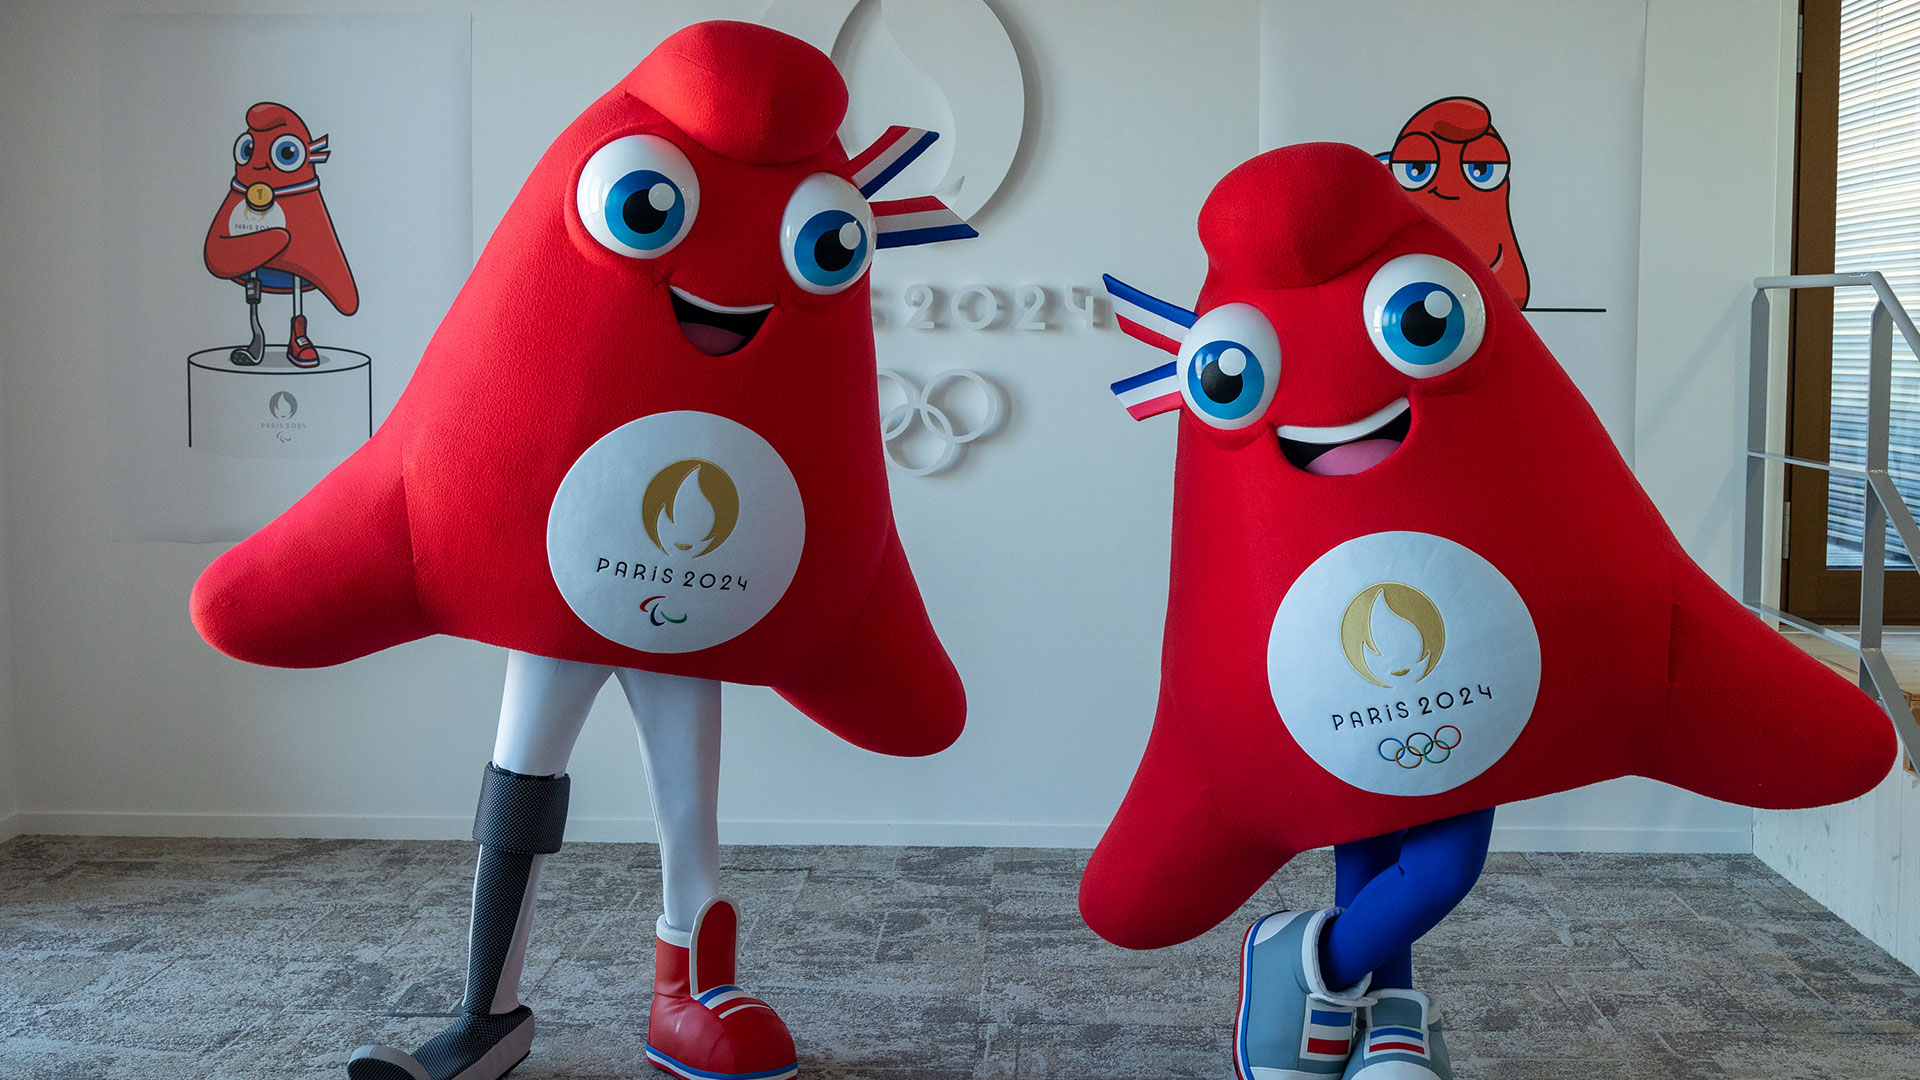 PARÍS, FRANCIA - 14 DE NOVIEMBRE: Los Phryges, inspirados en gorras frigias, se presentan como mascotas de los Juegos Olímpicos y Paralímpicos de Verano de París 2024 el 10 de noviembre de 2022 en París, Francia.

Foto. Marc Piasecki/Getty Images